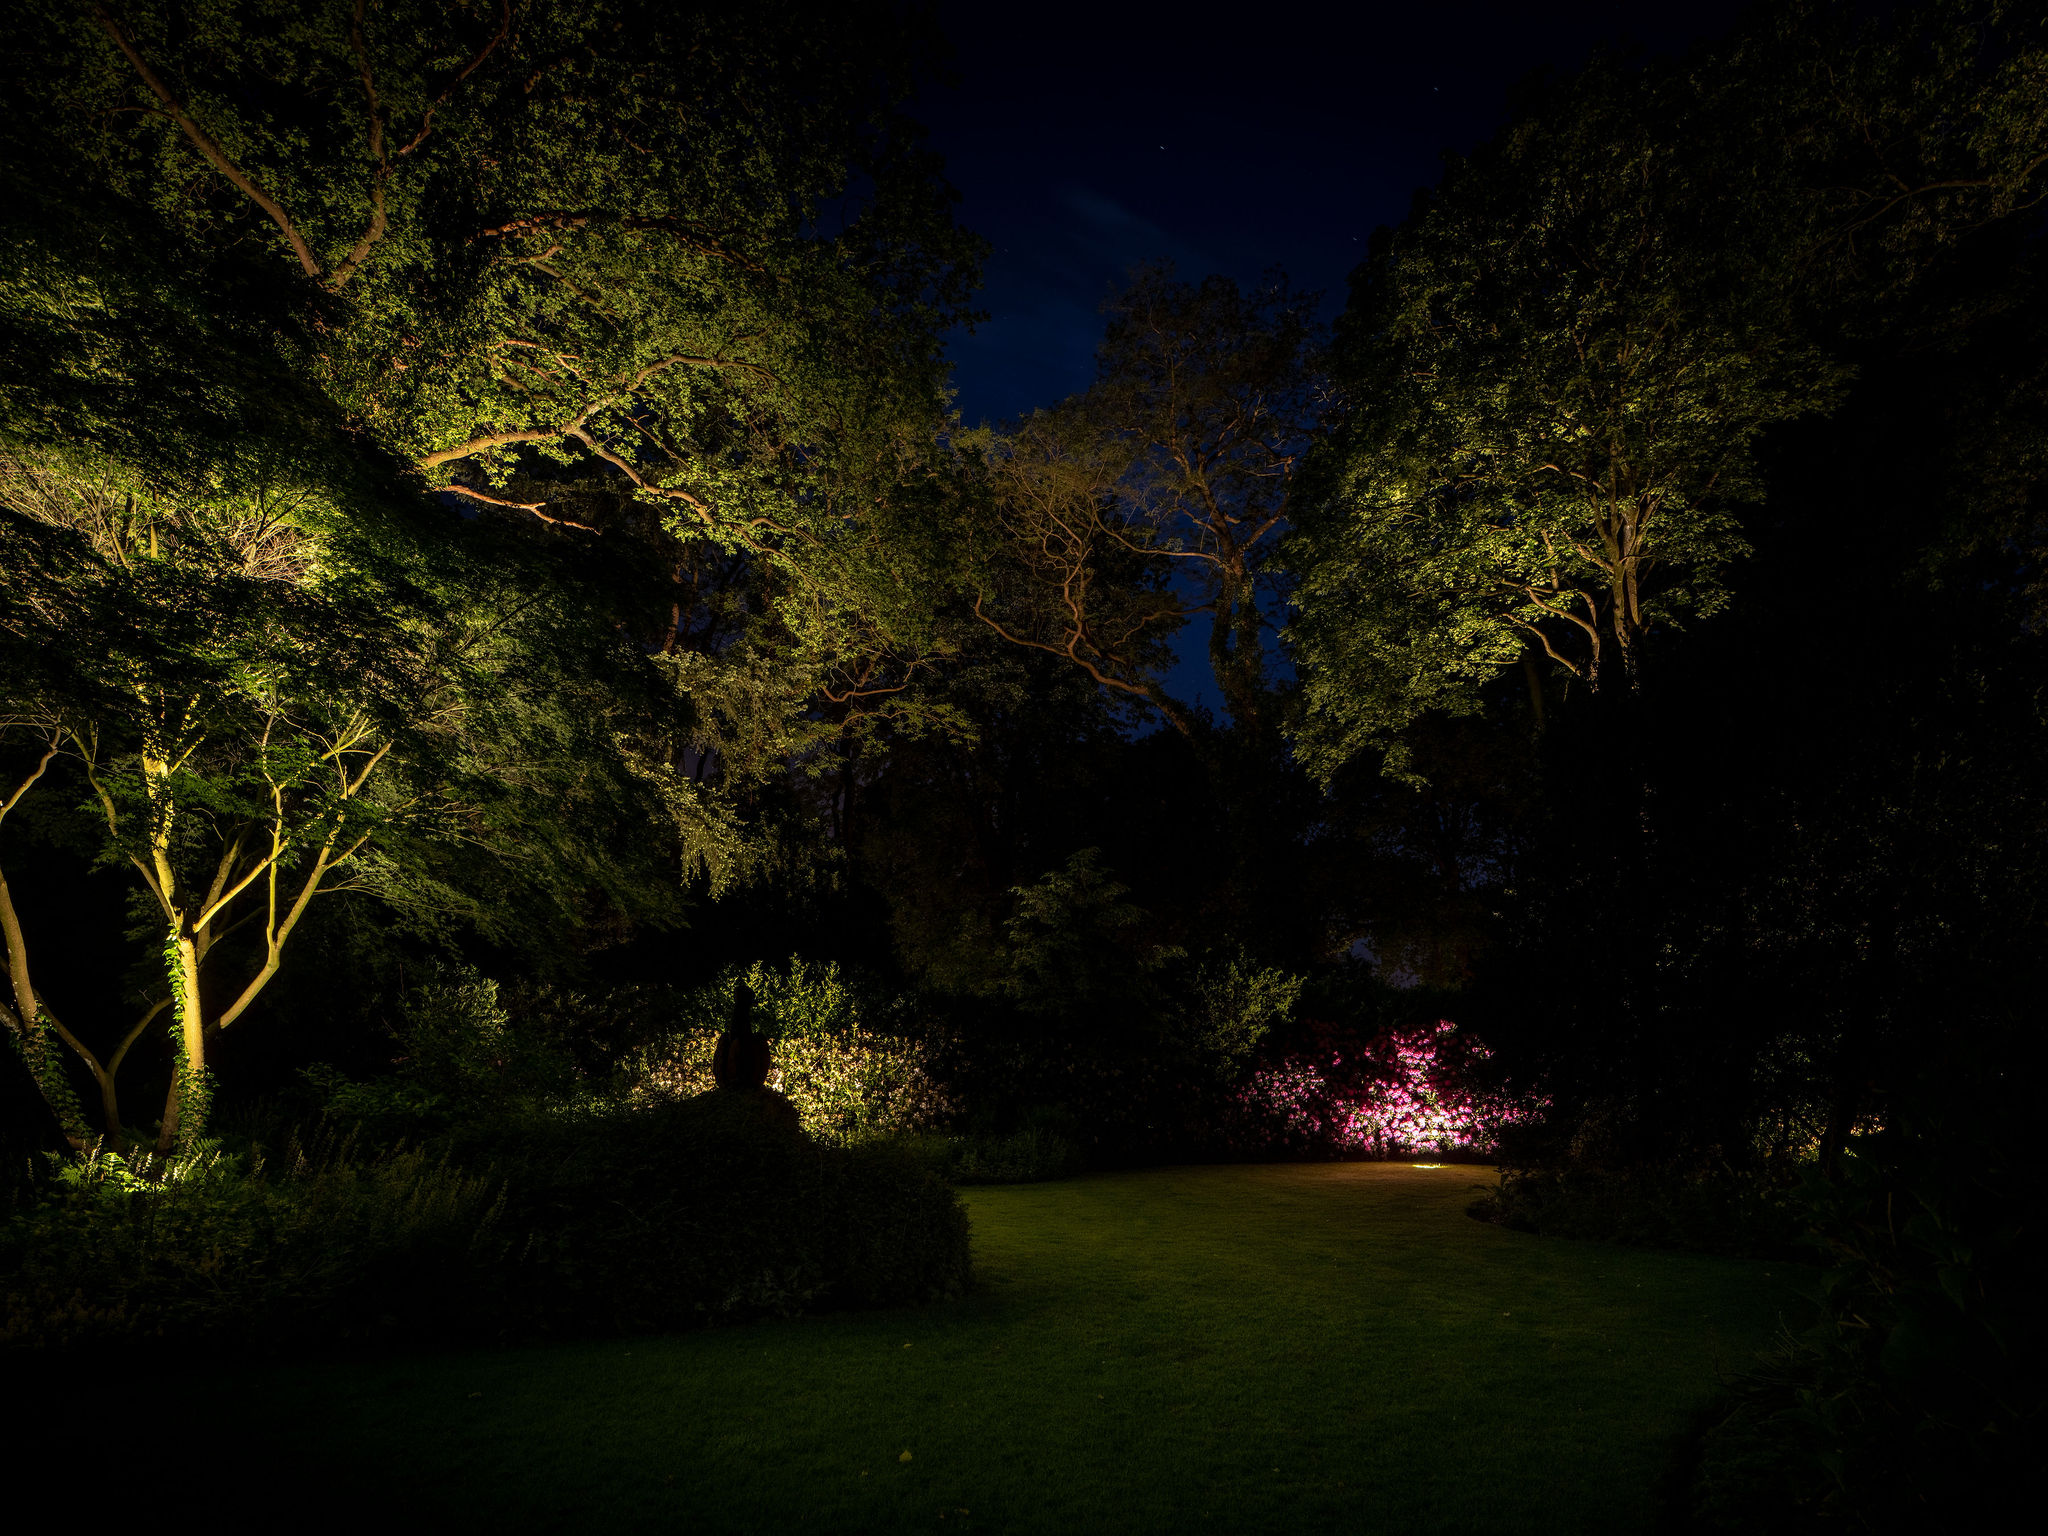 De vierjaargetijden komen tot leven met de verlichting van Lars Mallant, deze schitterende foto van een fraai verlichte tuin in de herfst is een lust voor het oog. De trap is uitgelicht en de bomen vormen een sprookjesachtig decor